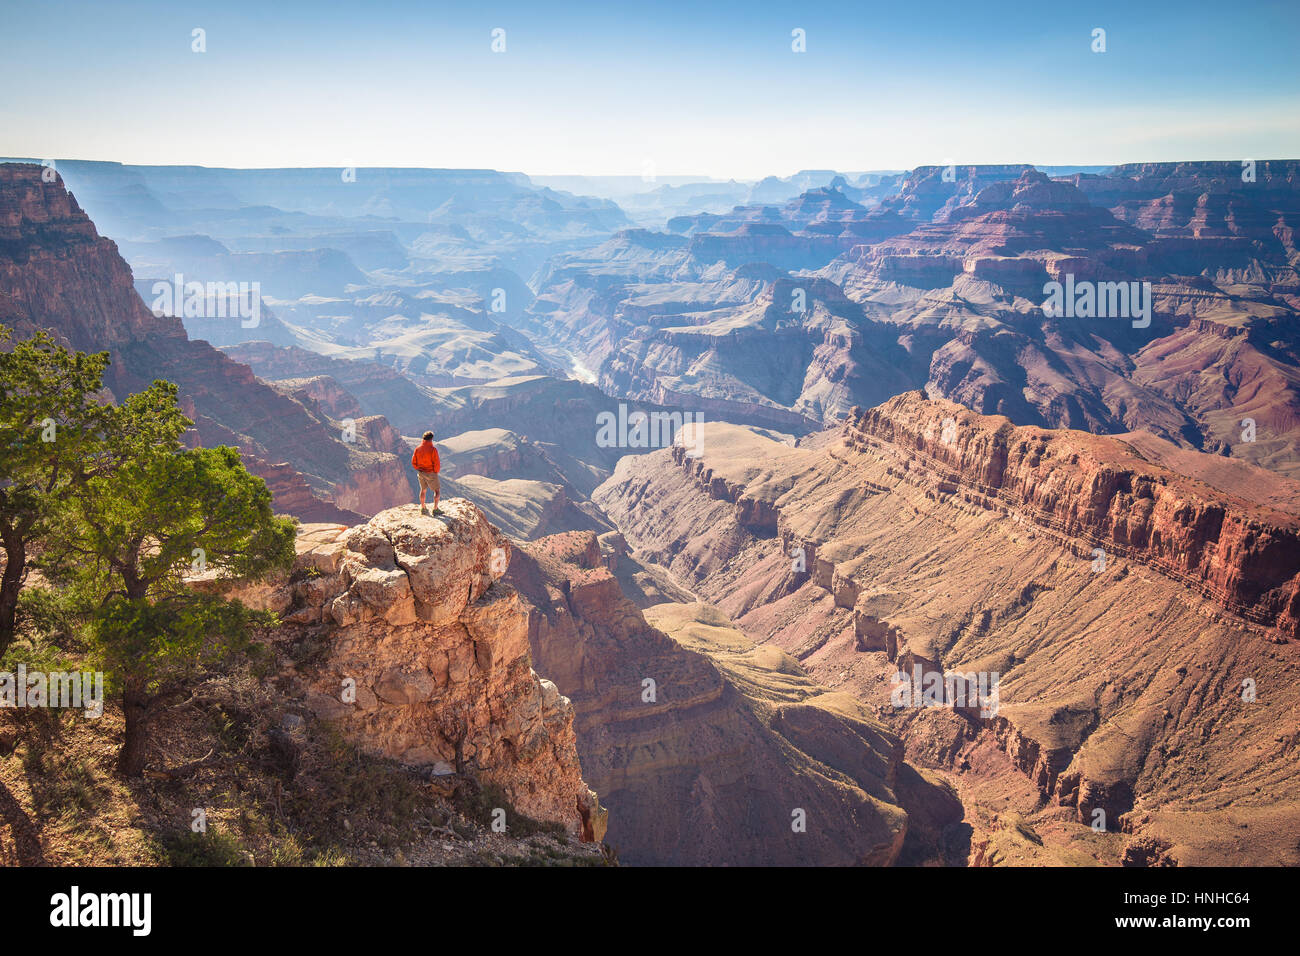 Un male hiker est debout sur une falaise abrupte en profitant de la vue incroyable sur la célèbre Grand Canyon sur une belle journée ensoleillée avec ciel bleu, Arizona, USA Banque D'Images